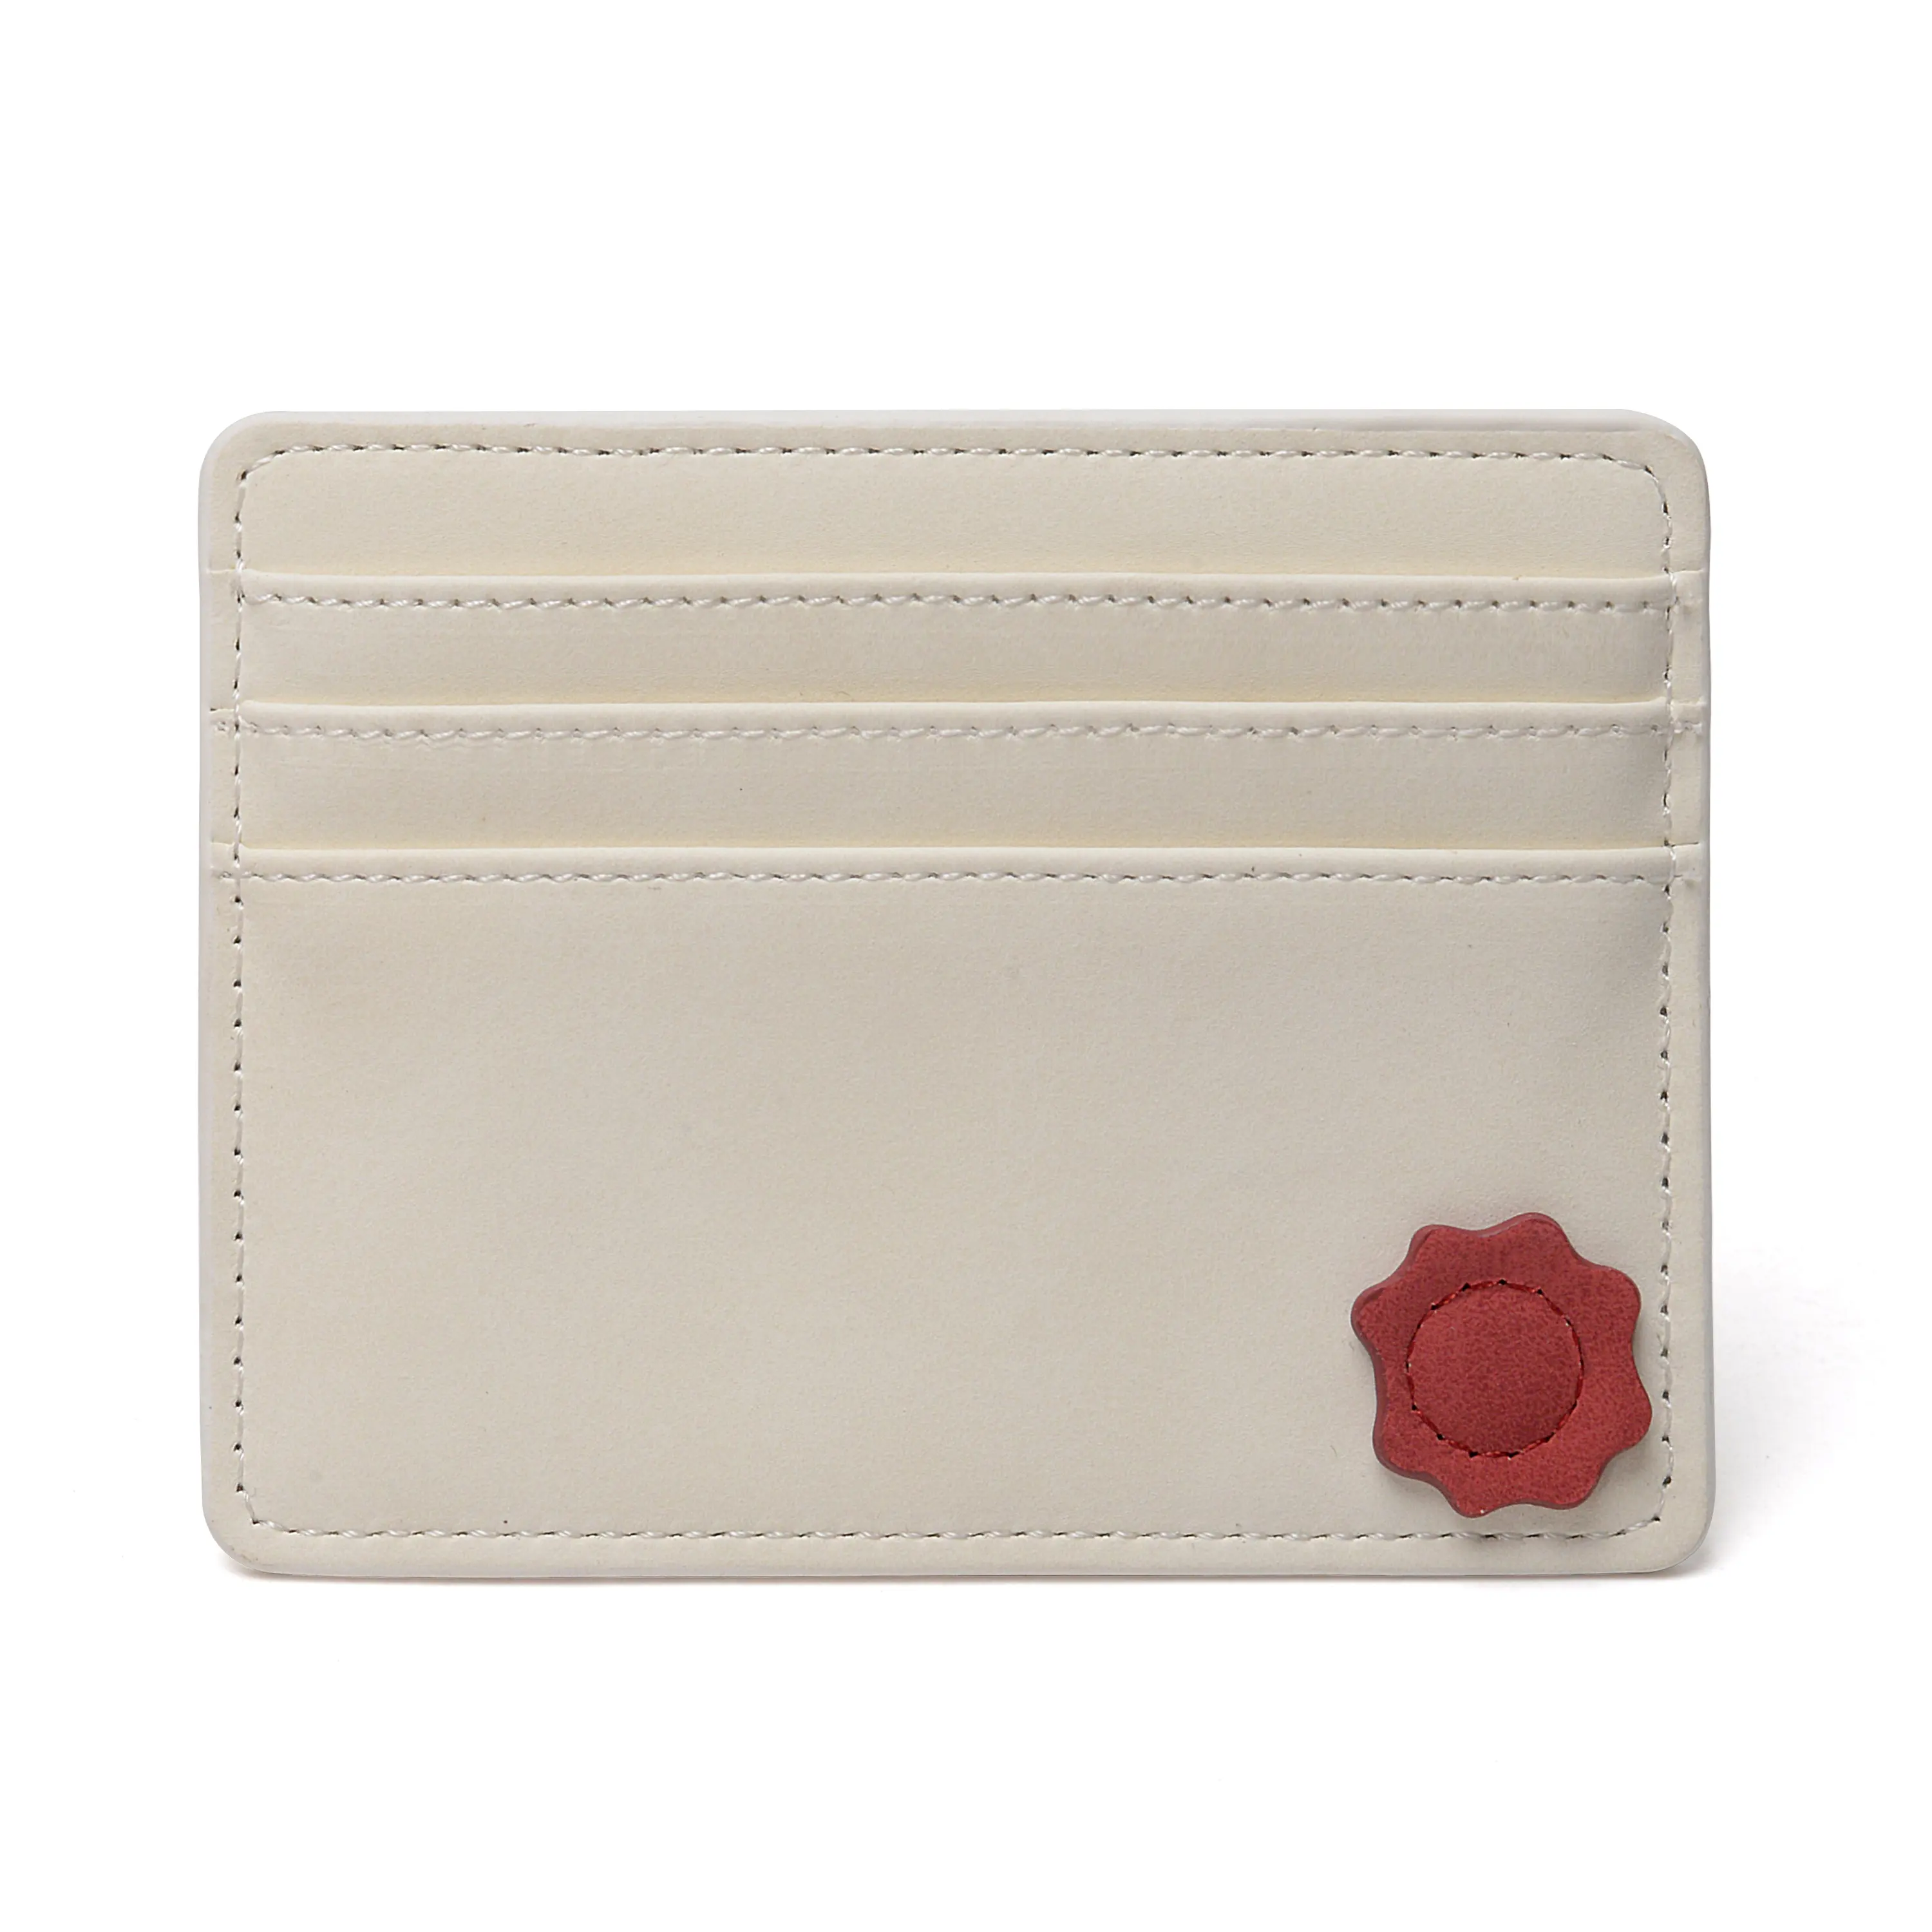 Vintage Retro Cream White Leather Cardholder Vintage Name Holder Wallet and Holder